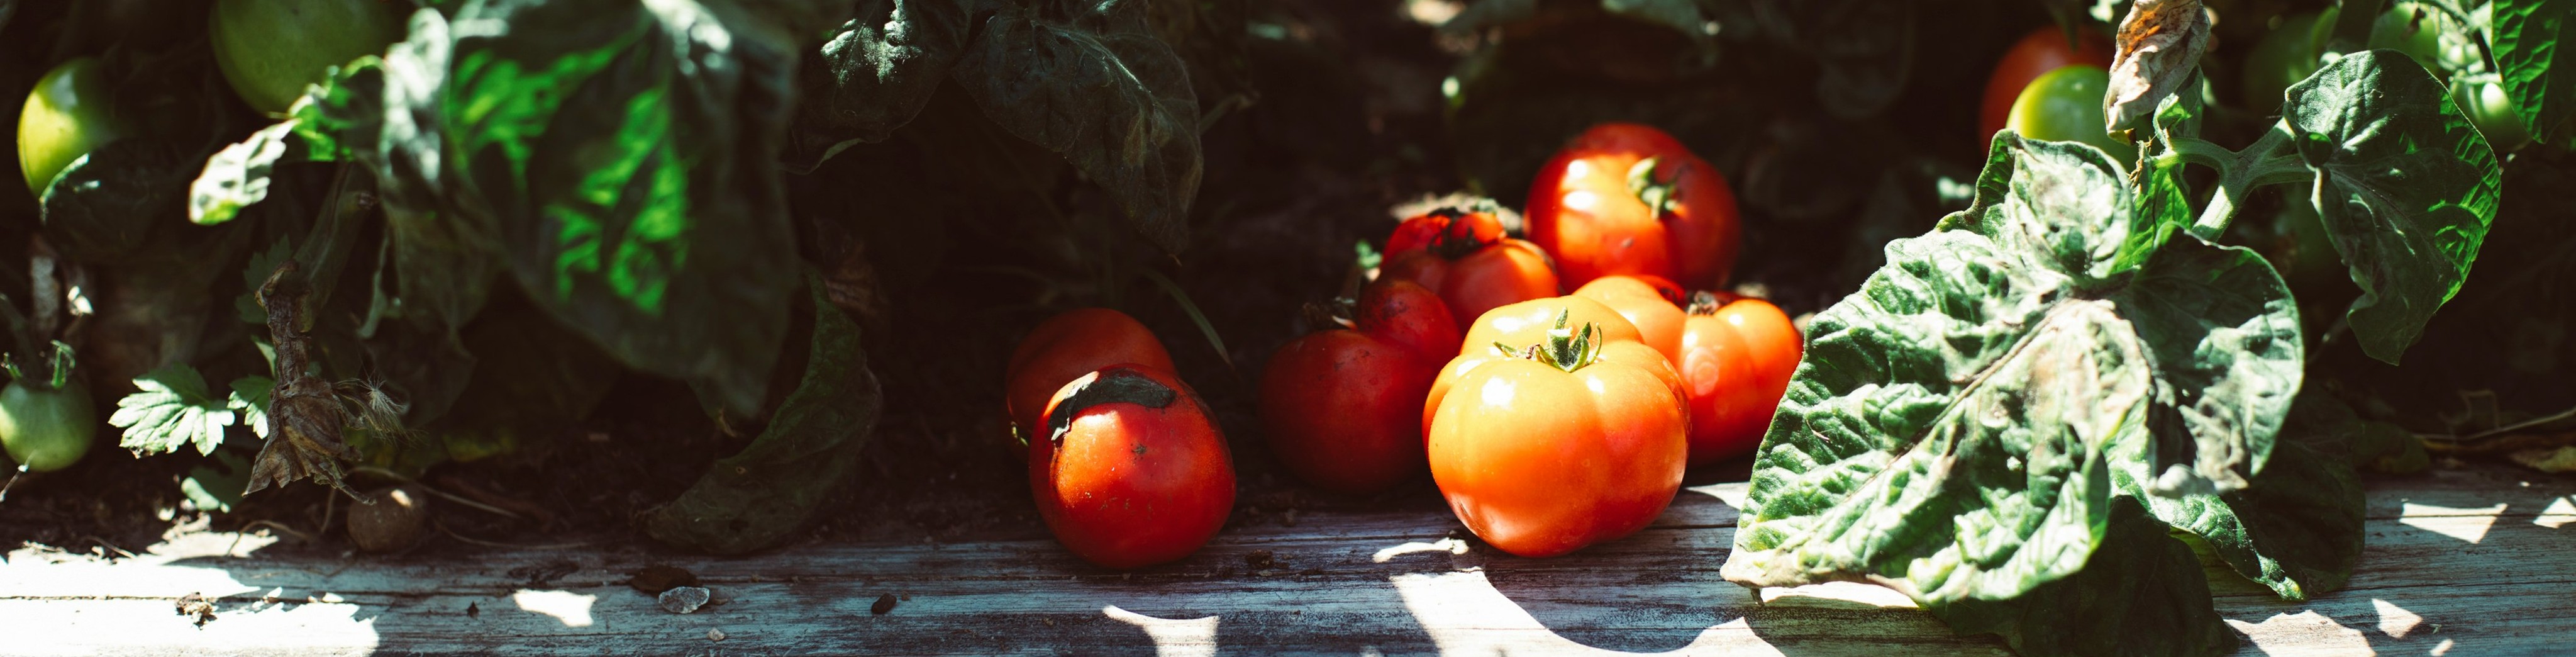 Hochbeet anlegen: So geht das im Garten und auf dem Balkon! Rote Tomaten im Vordergrund